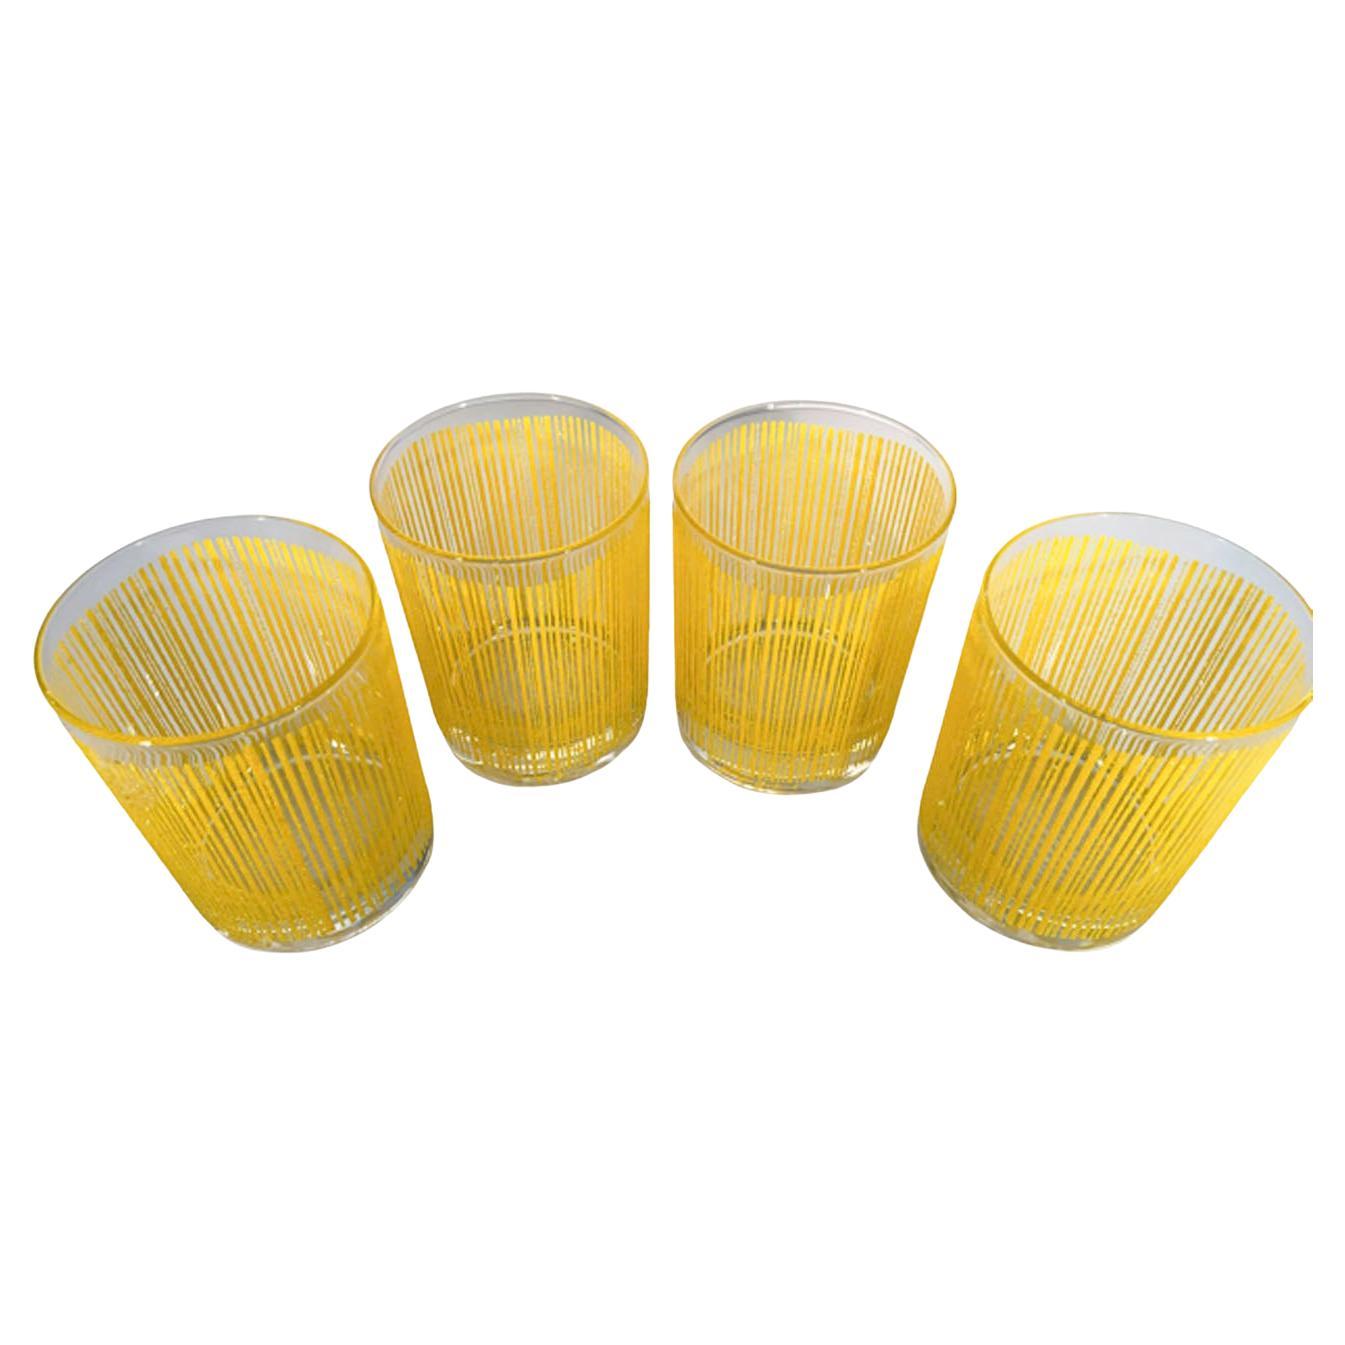 Quatre rares verres Georges Briard à motif de roches en jaune